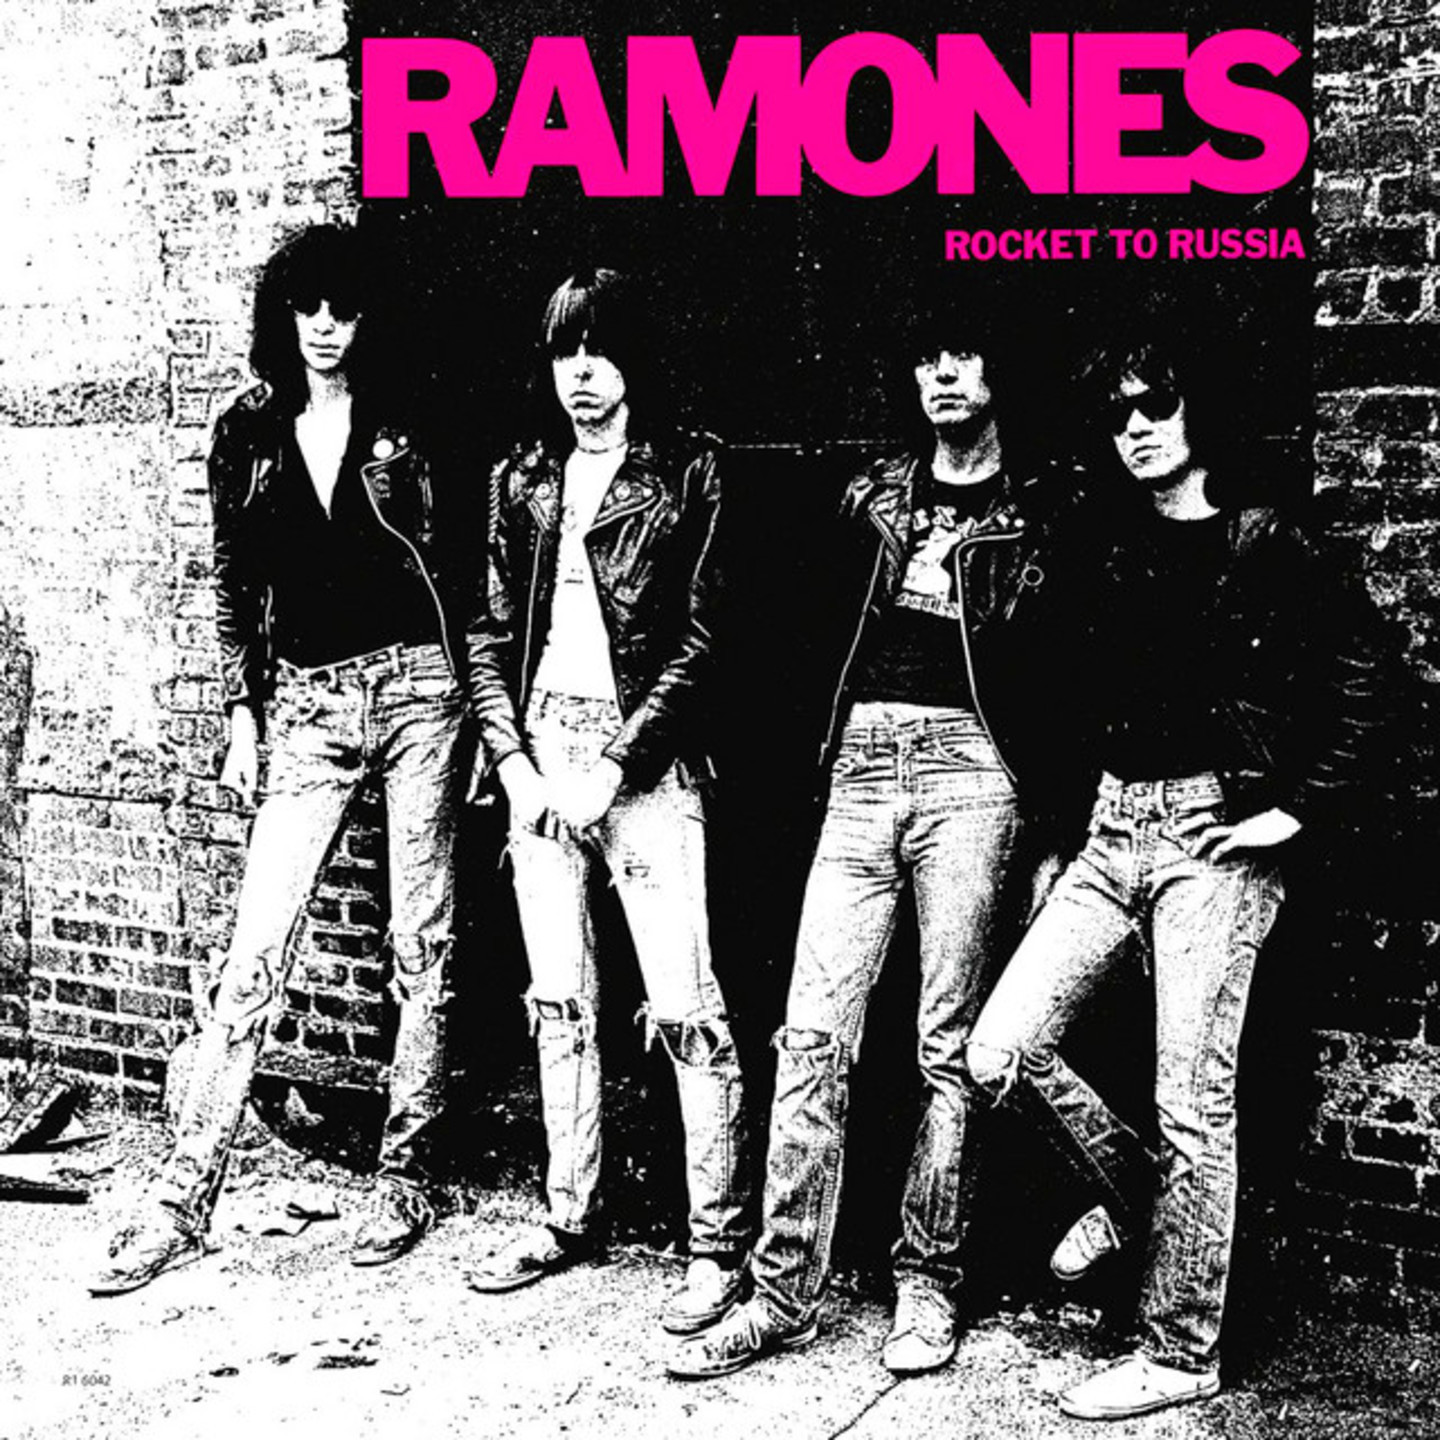 RAMONES, THE - Rocket To Russia LP 180g Vinyl